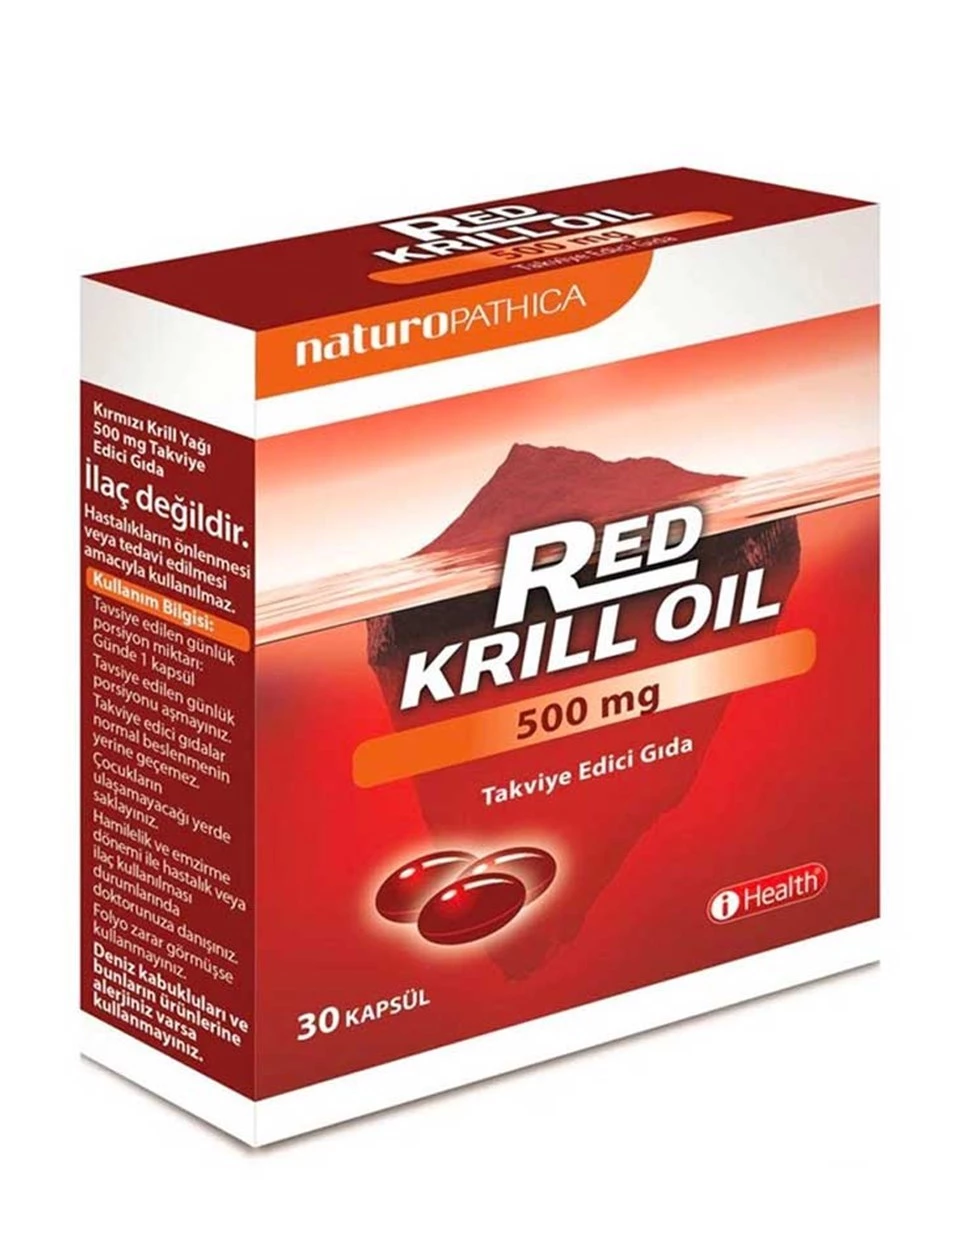 iHealth Red Krill Oil 500mg 30 Kapsül